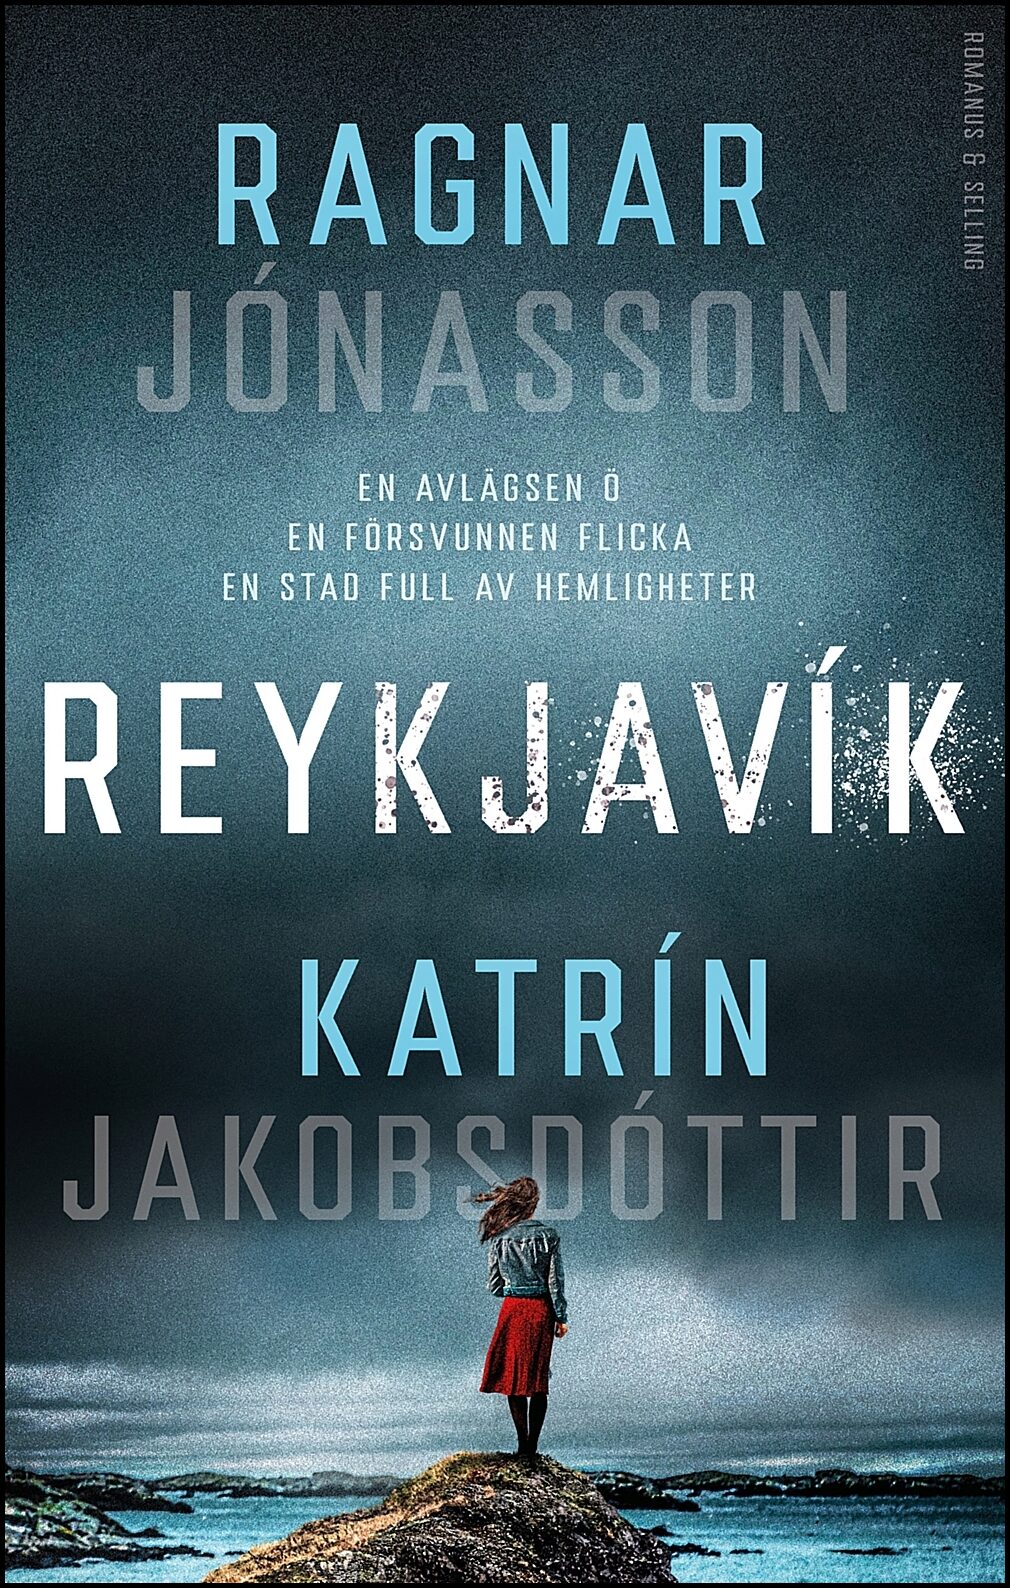 Jónasson, Ragnar| Jakobsdóttir, Katrín | Reykjavik